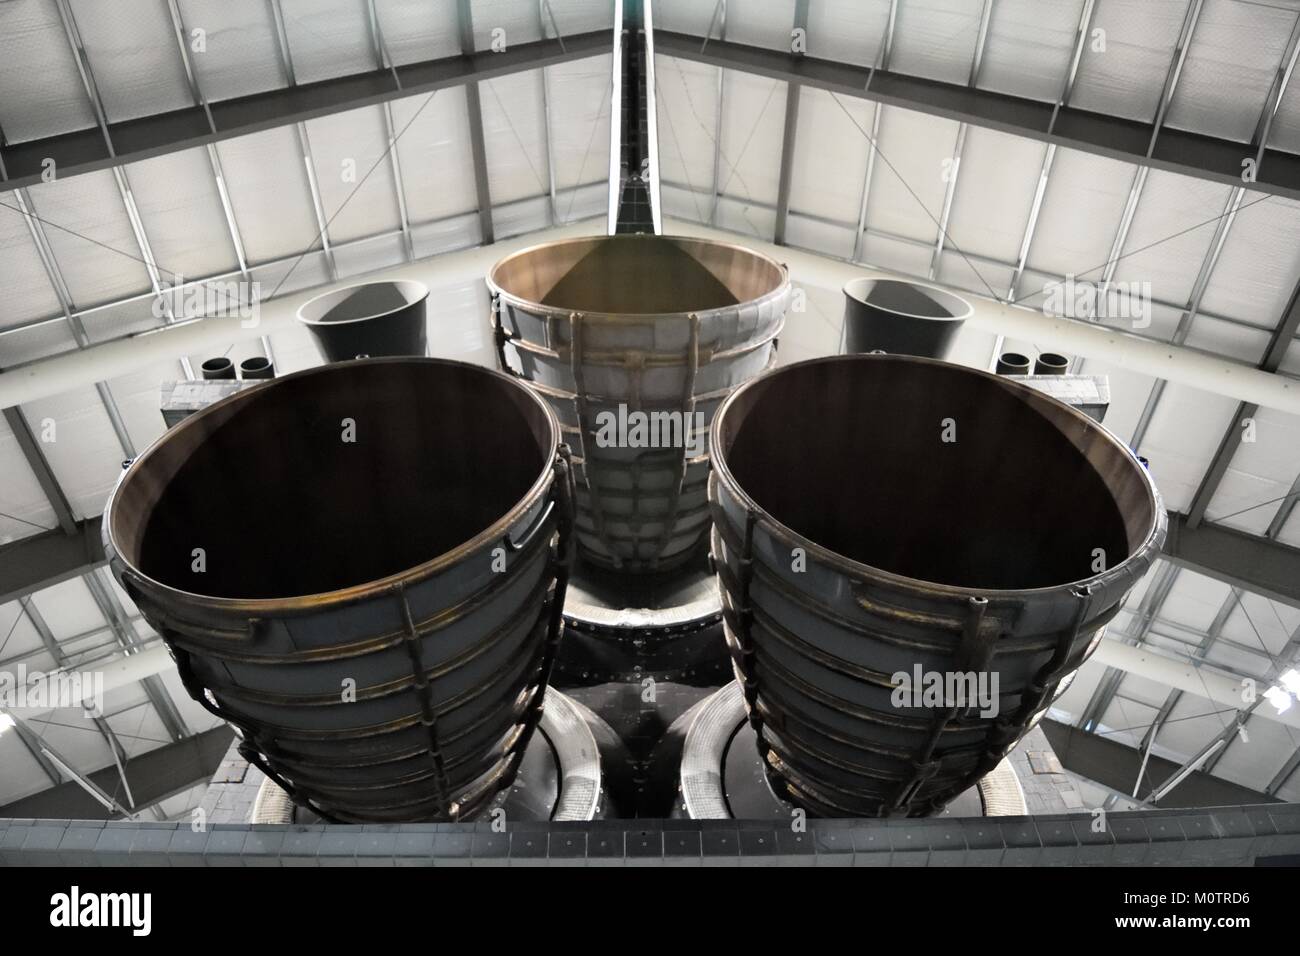 Les moteurs de la navette spatiale Endeavour situé à Los Angeles en Californie Banque D'Images